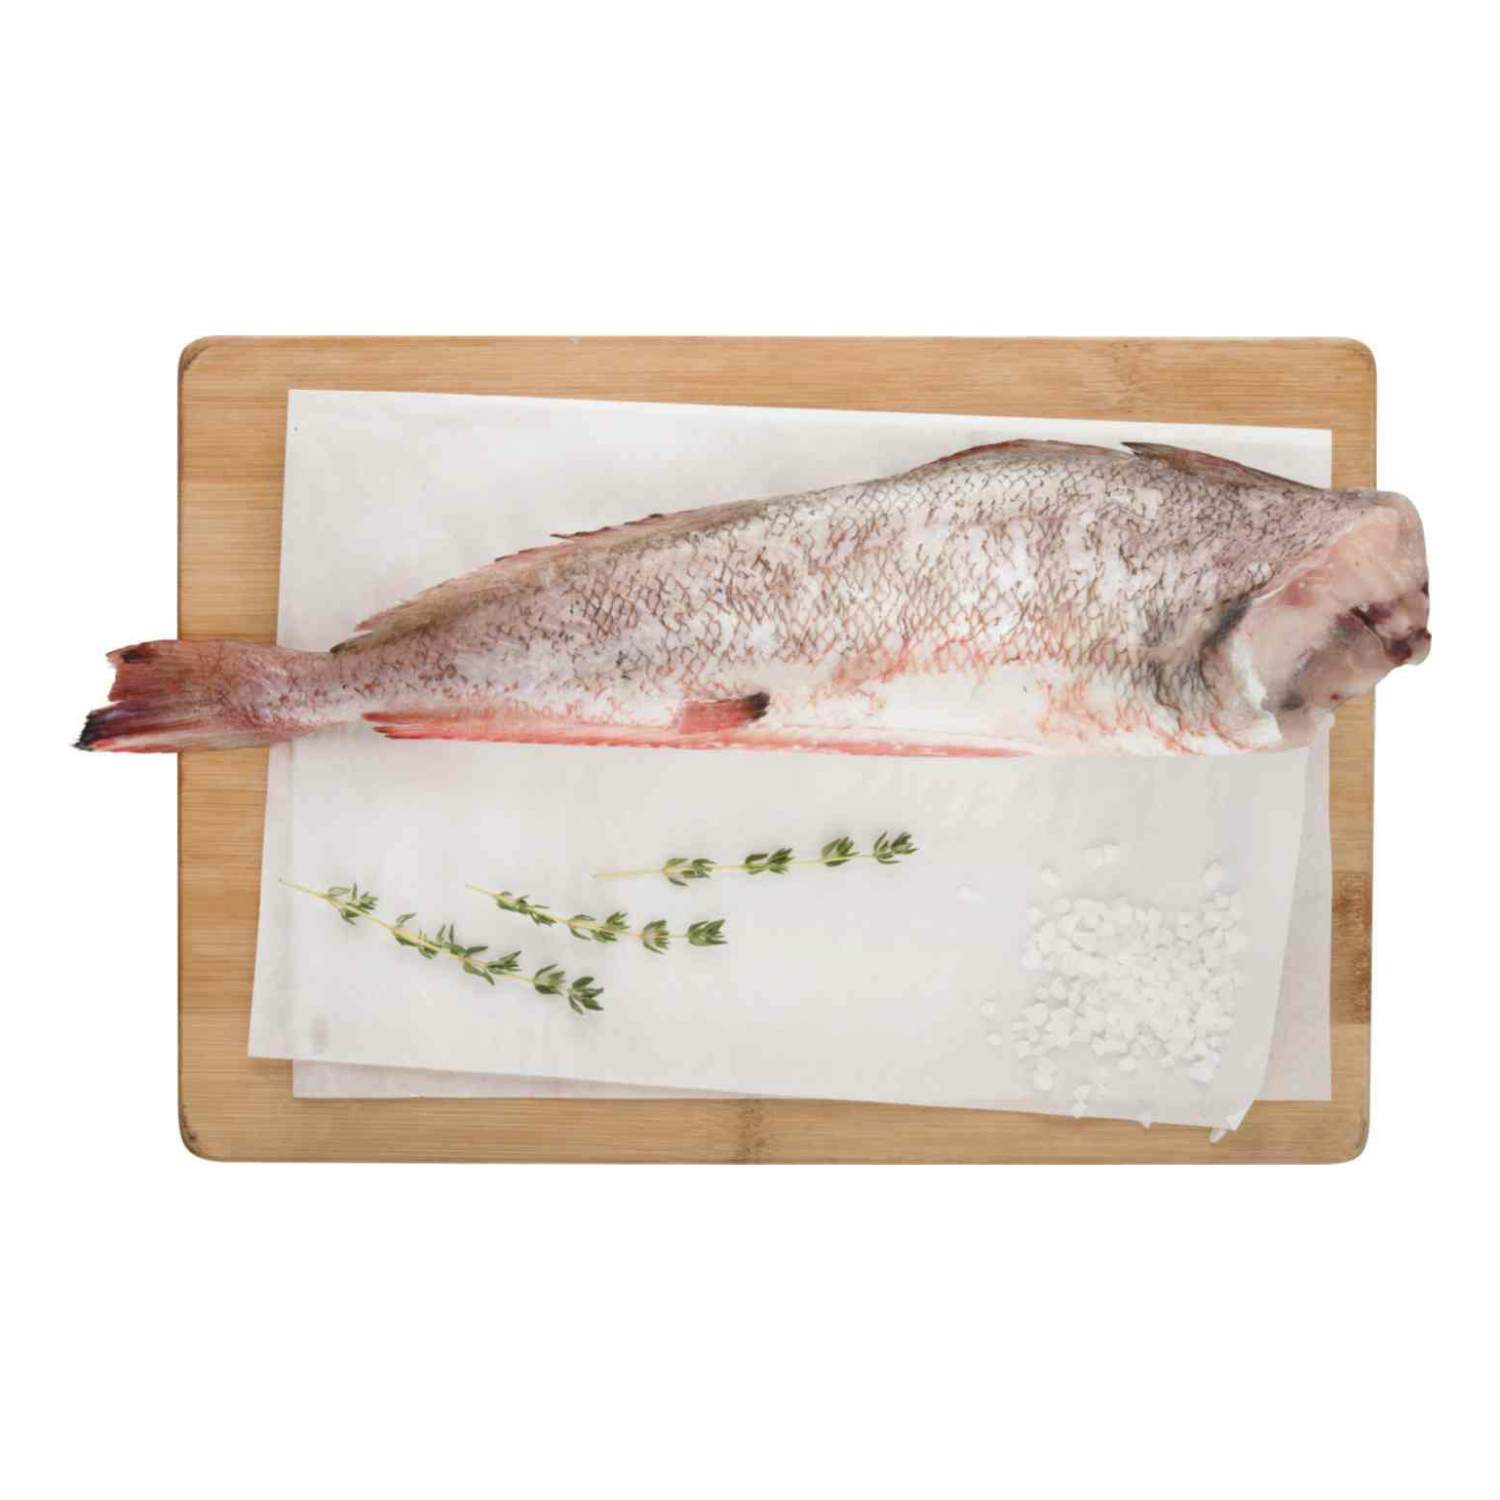 Треска белая или красная рыба: различия, свойства, приготовление